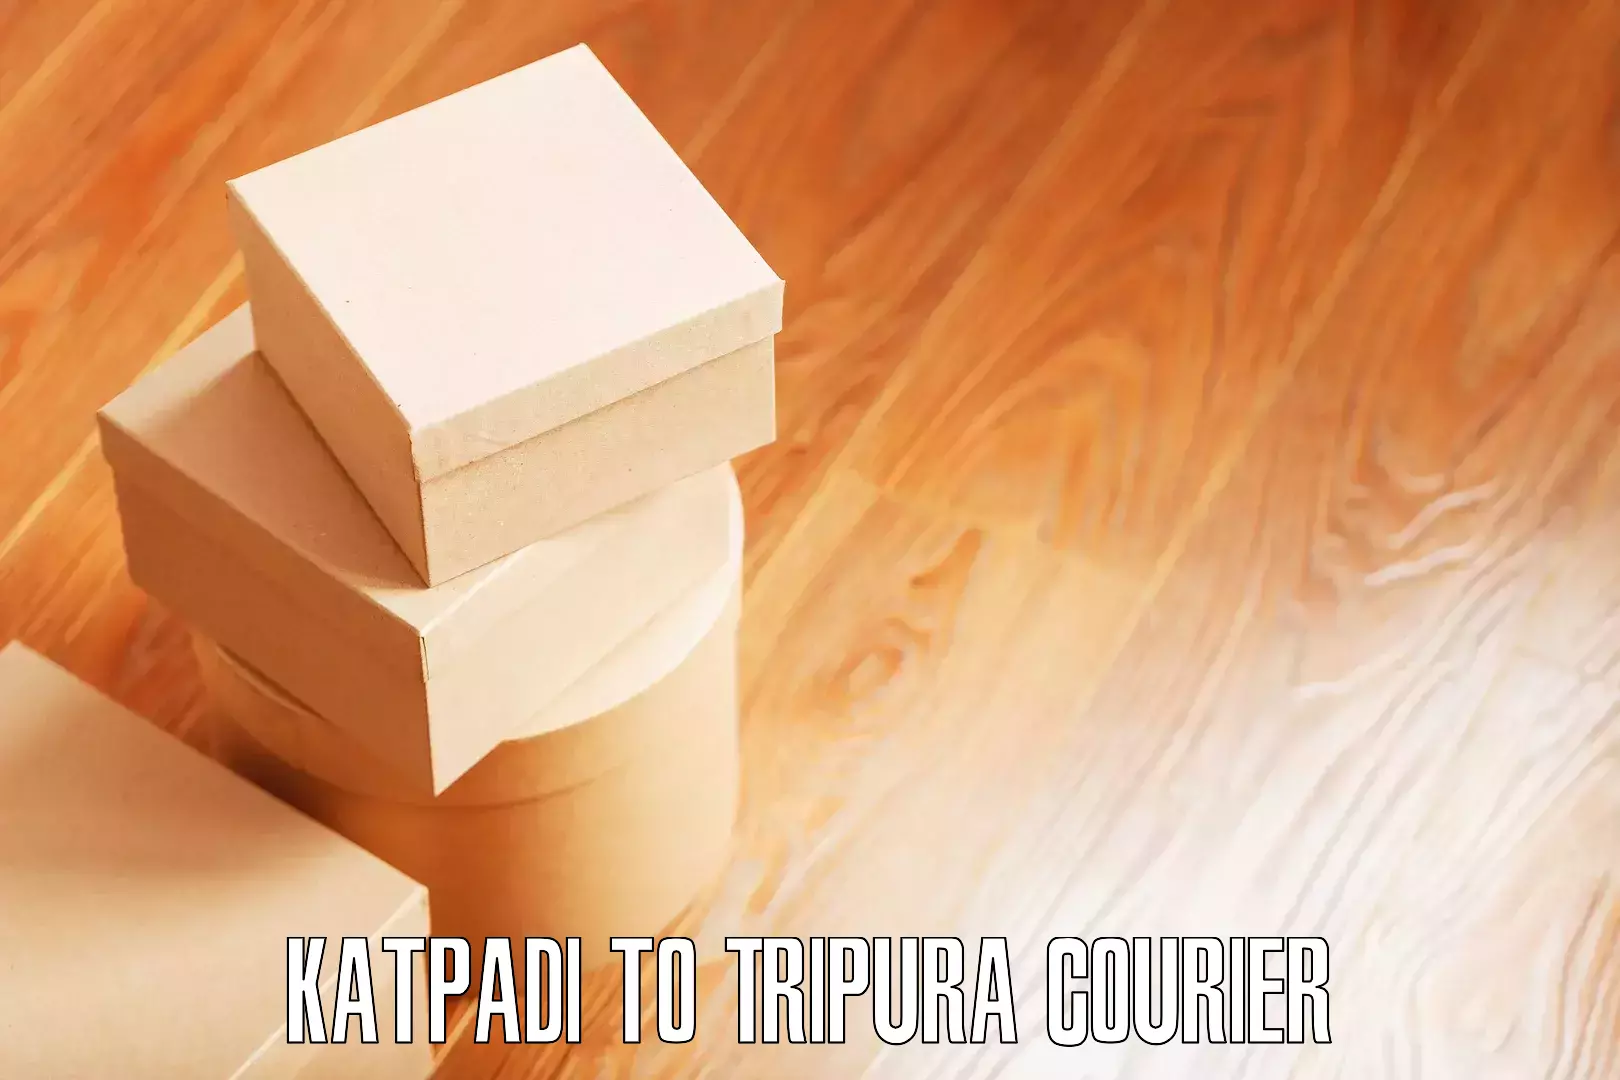 Furniture moving strategies in Katpadi to Tripura